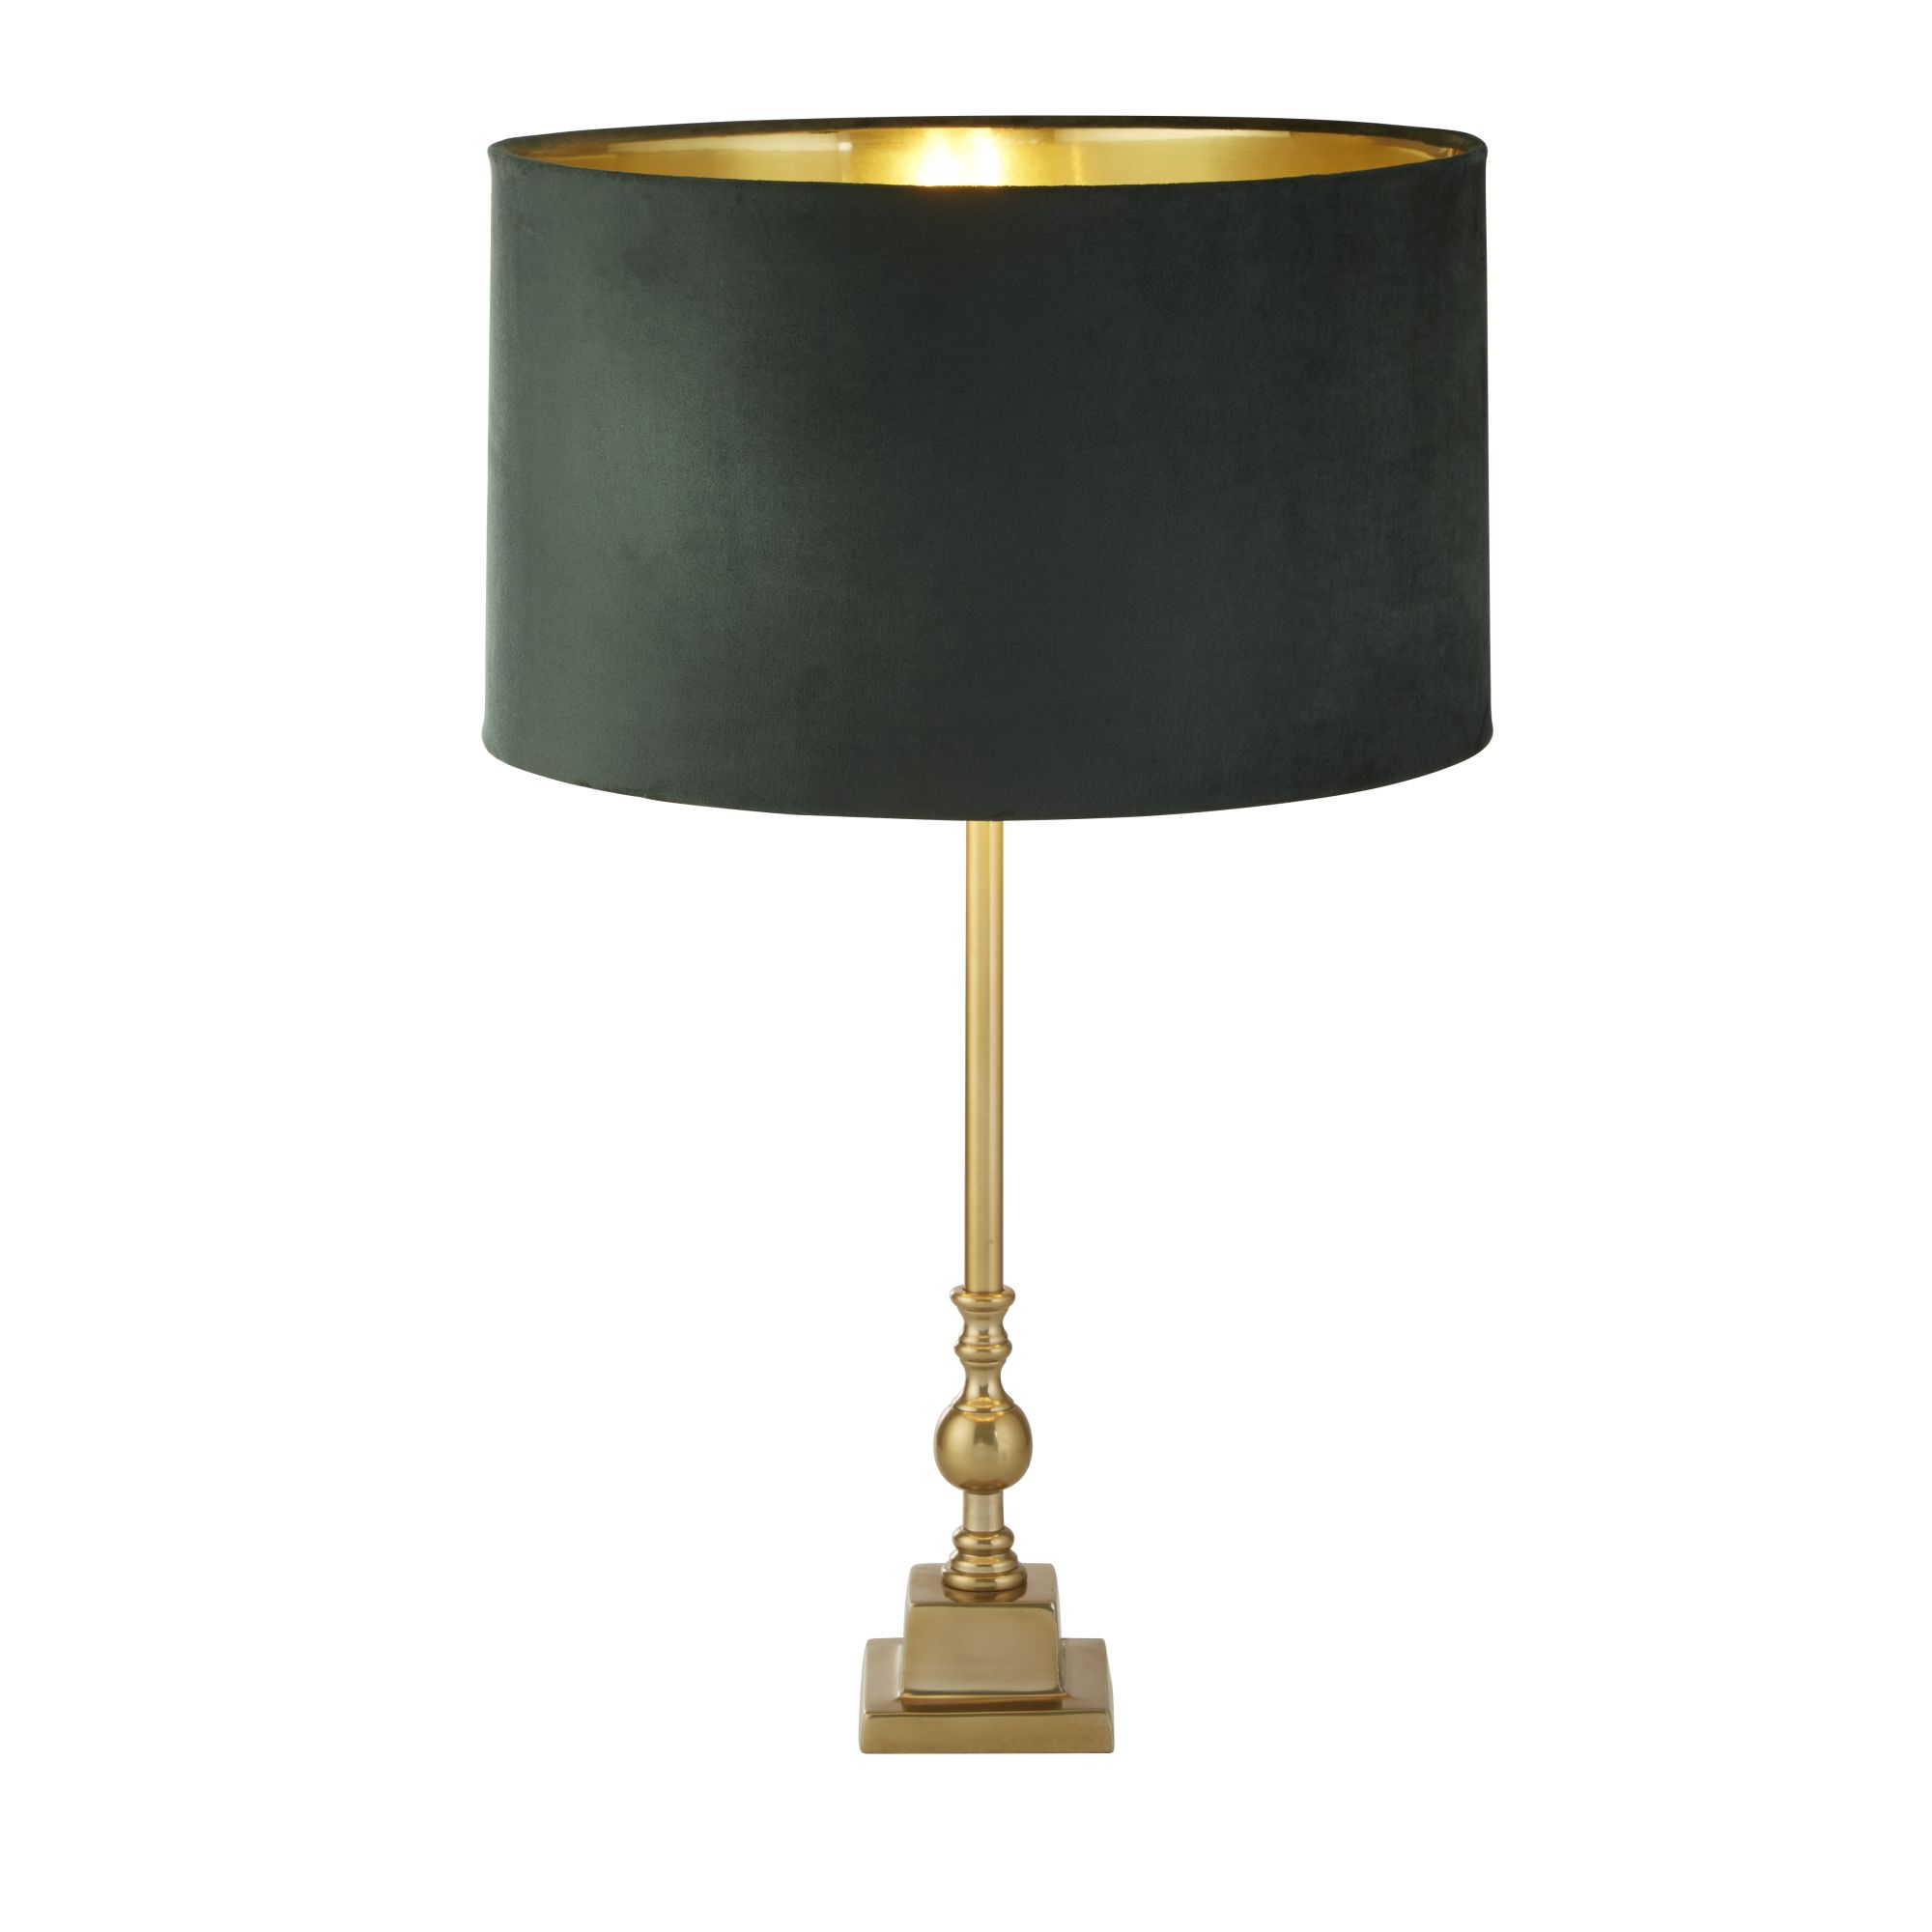 Whitby Table Lamp - Antique Brass Metal & Green Velvet Shade